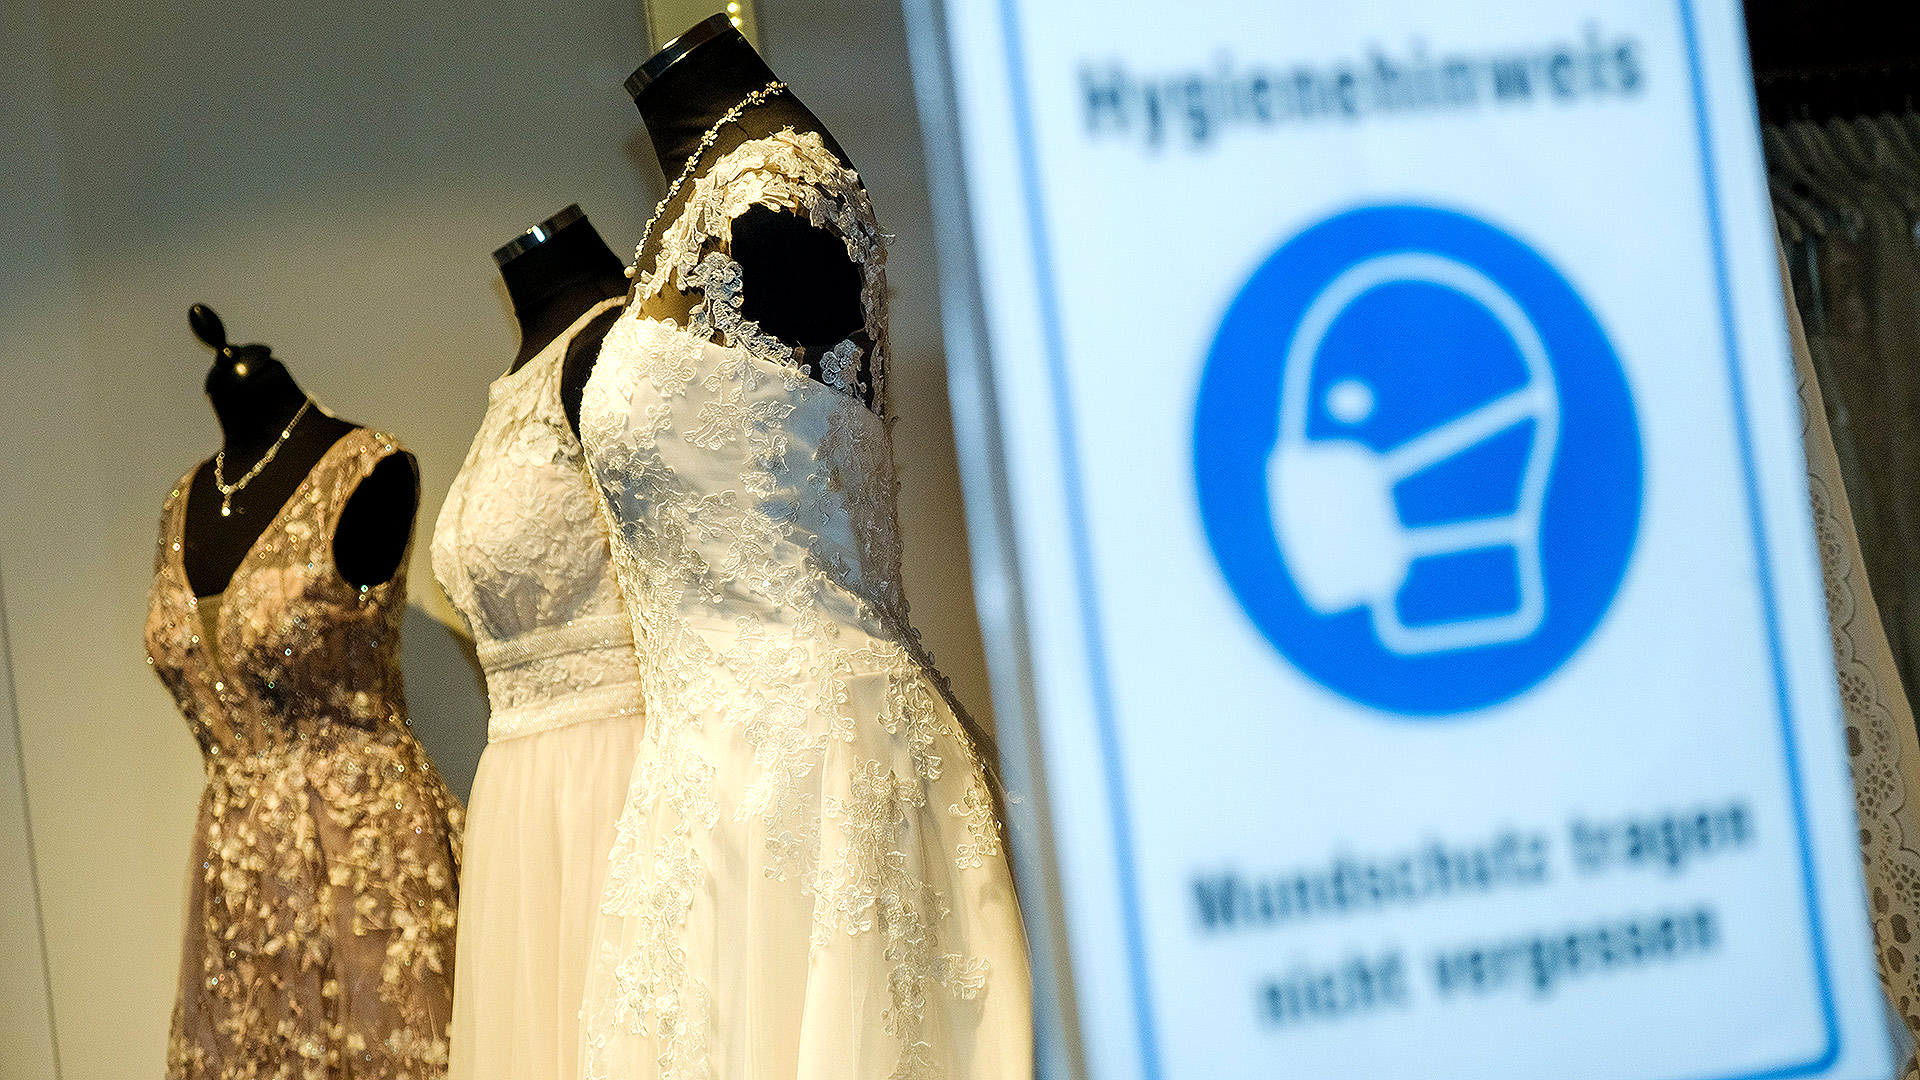 Brautkleider in einem Schaufenster und im Vordergrund ein Hinweisschild zur Maskenpflicht während der Corona-Pandemie | 